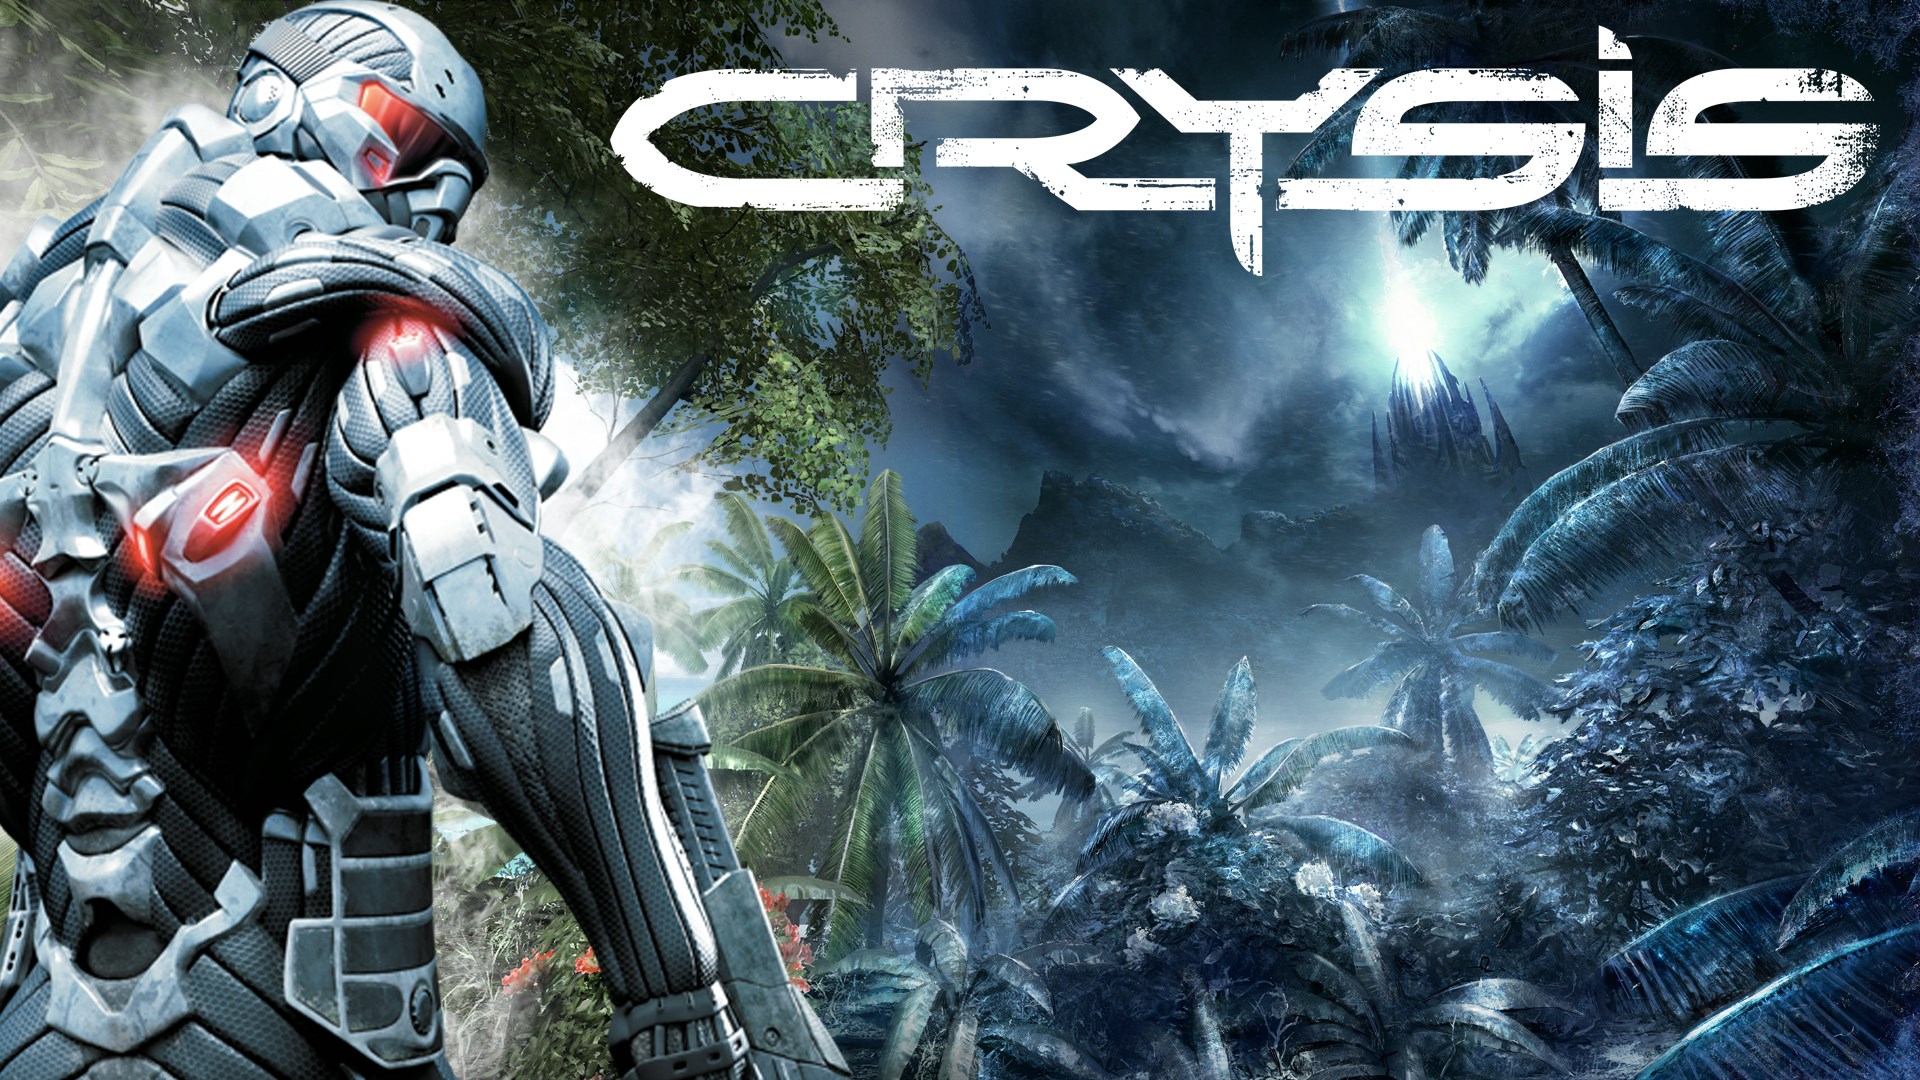 Tweet críptic del compte oficial de Twitter de Crysis suggereix un revival de sèries